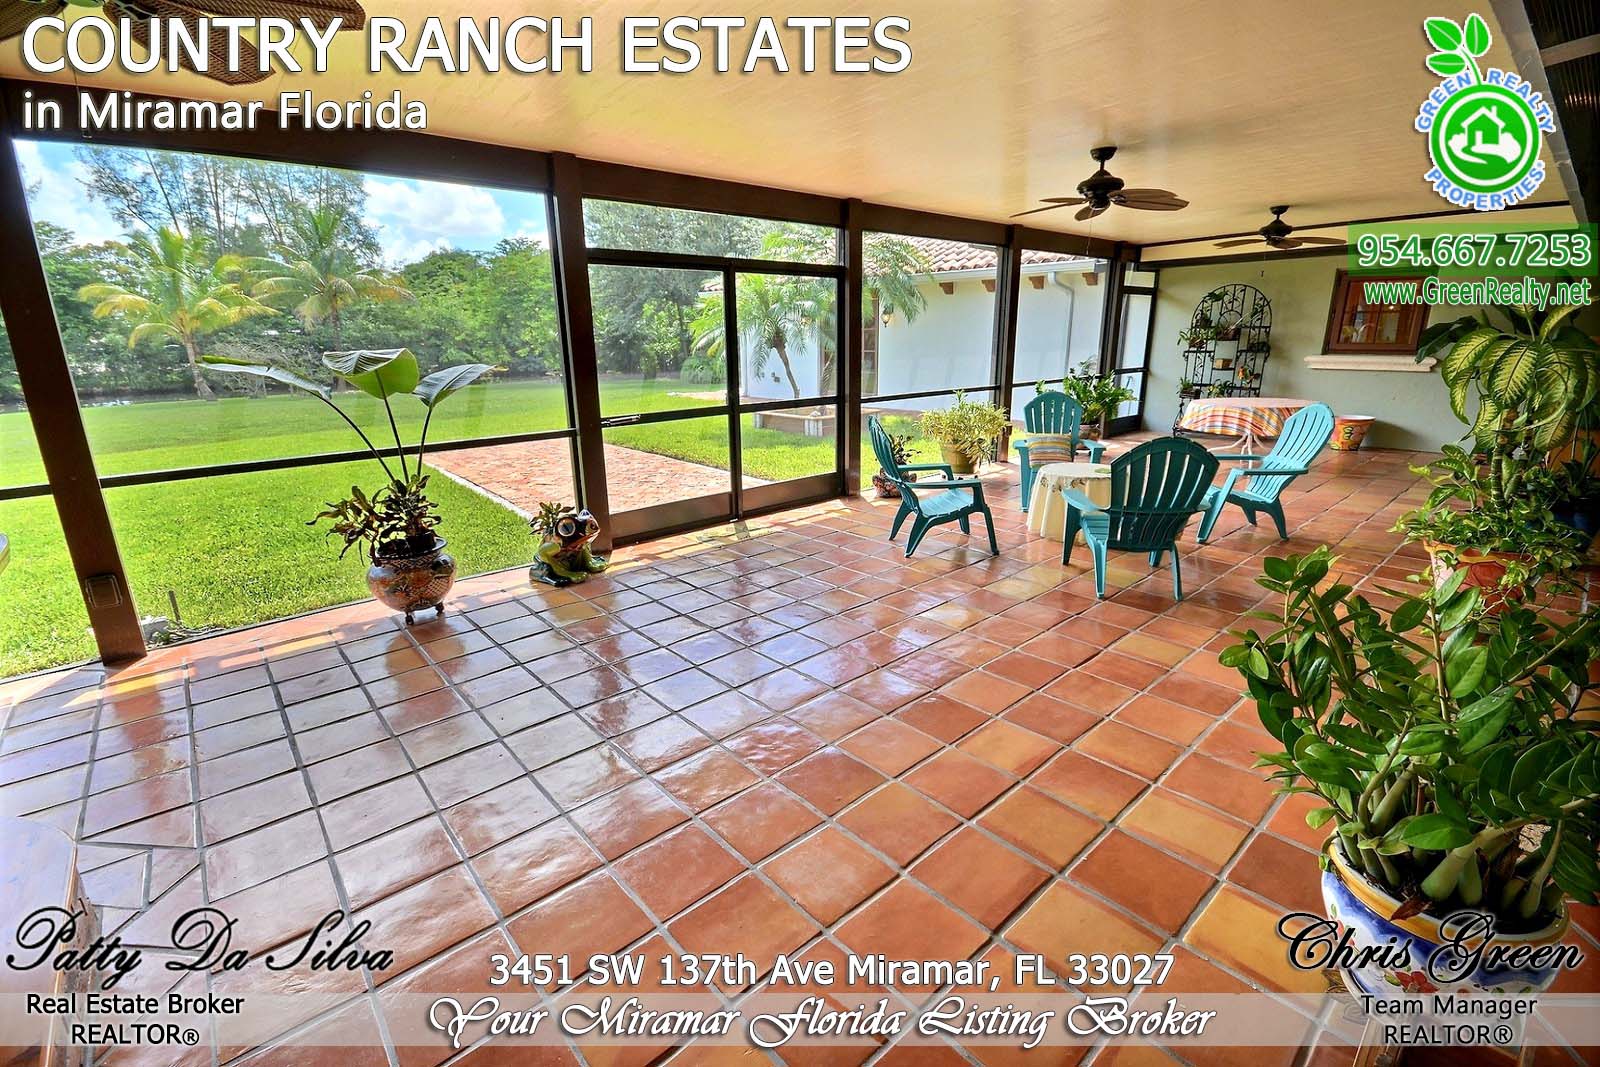 47 Miramar Florida Luxury Real Estate